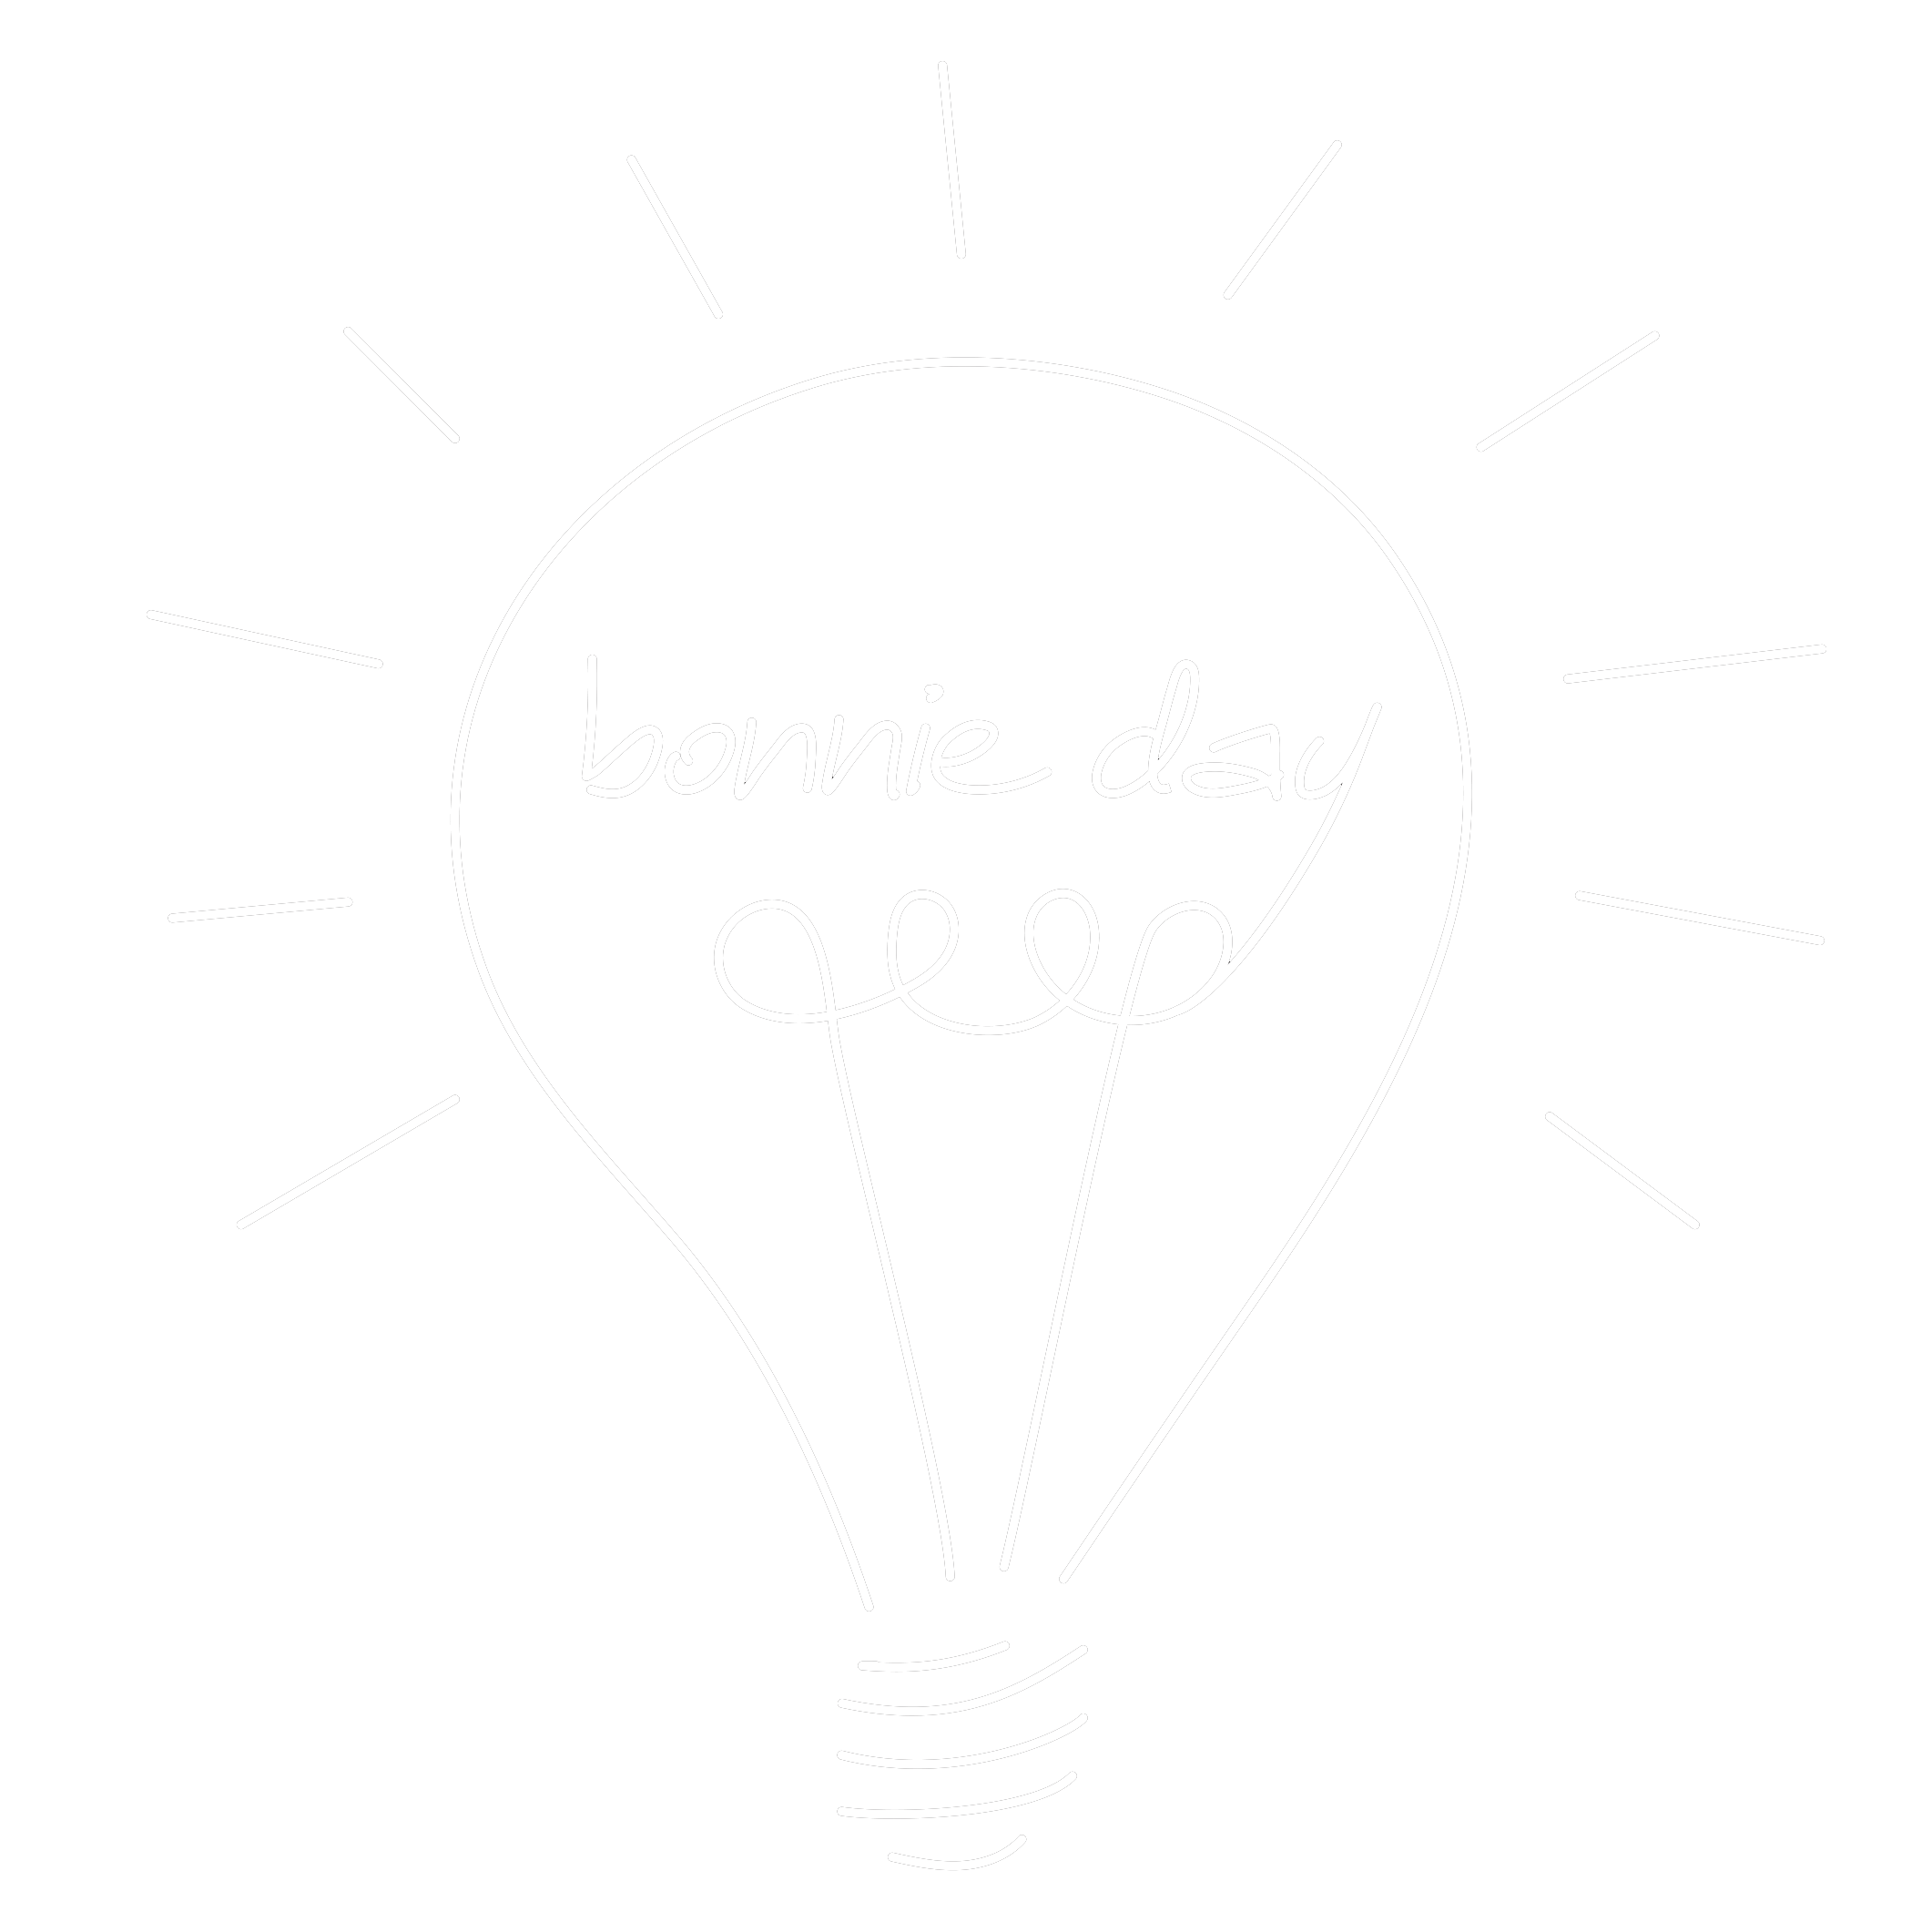 Bonnie Day